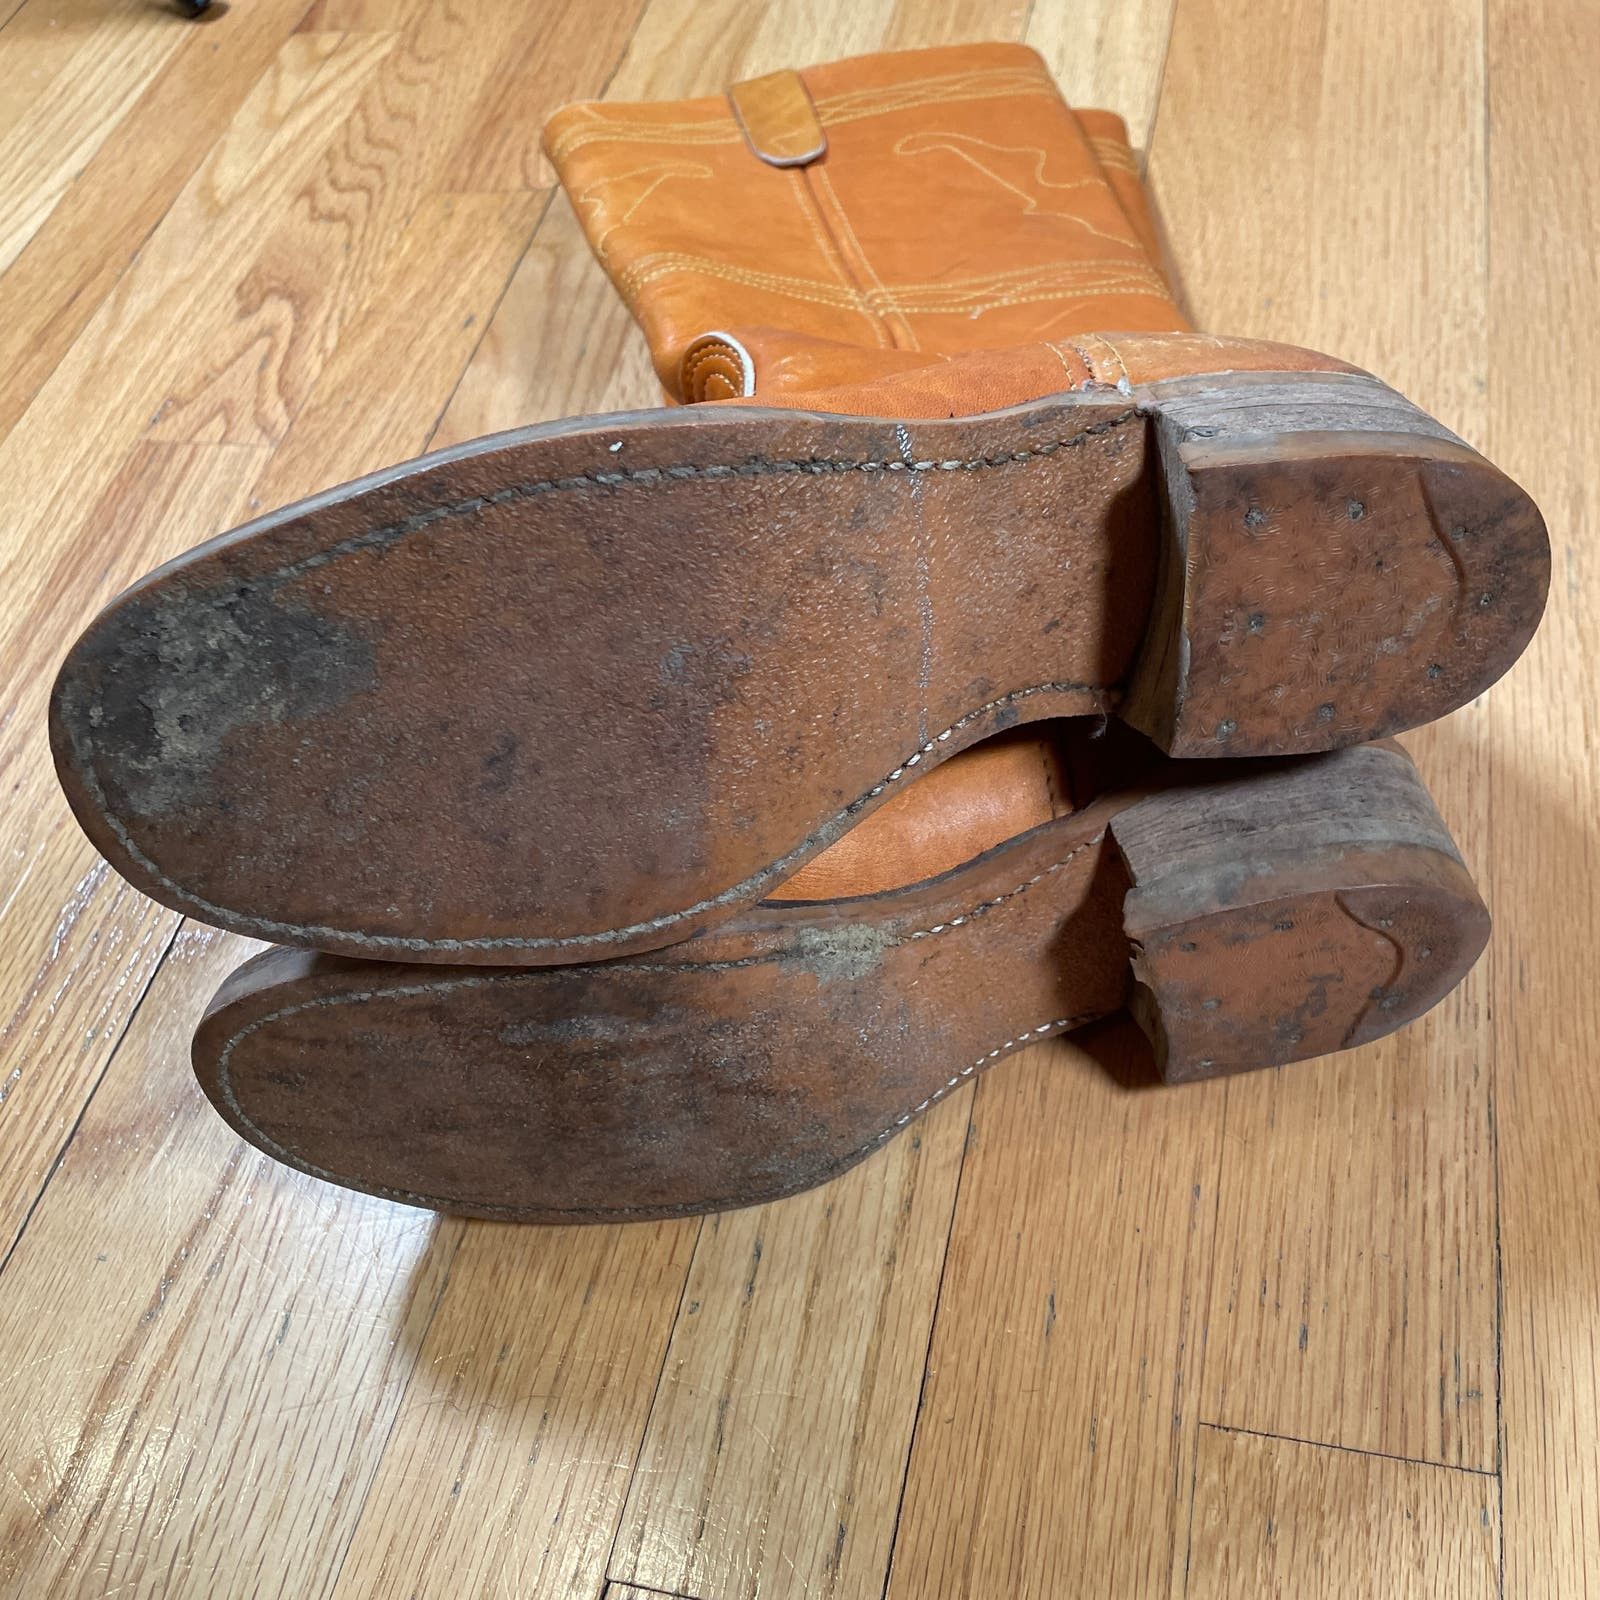 Vintage Vintage Leather Calf Boots 8 Mens Size US 8 / EU 41 - 4 Thumbnail